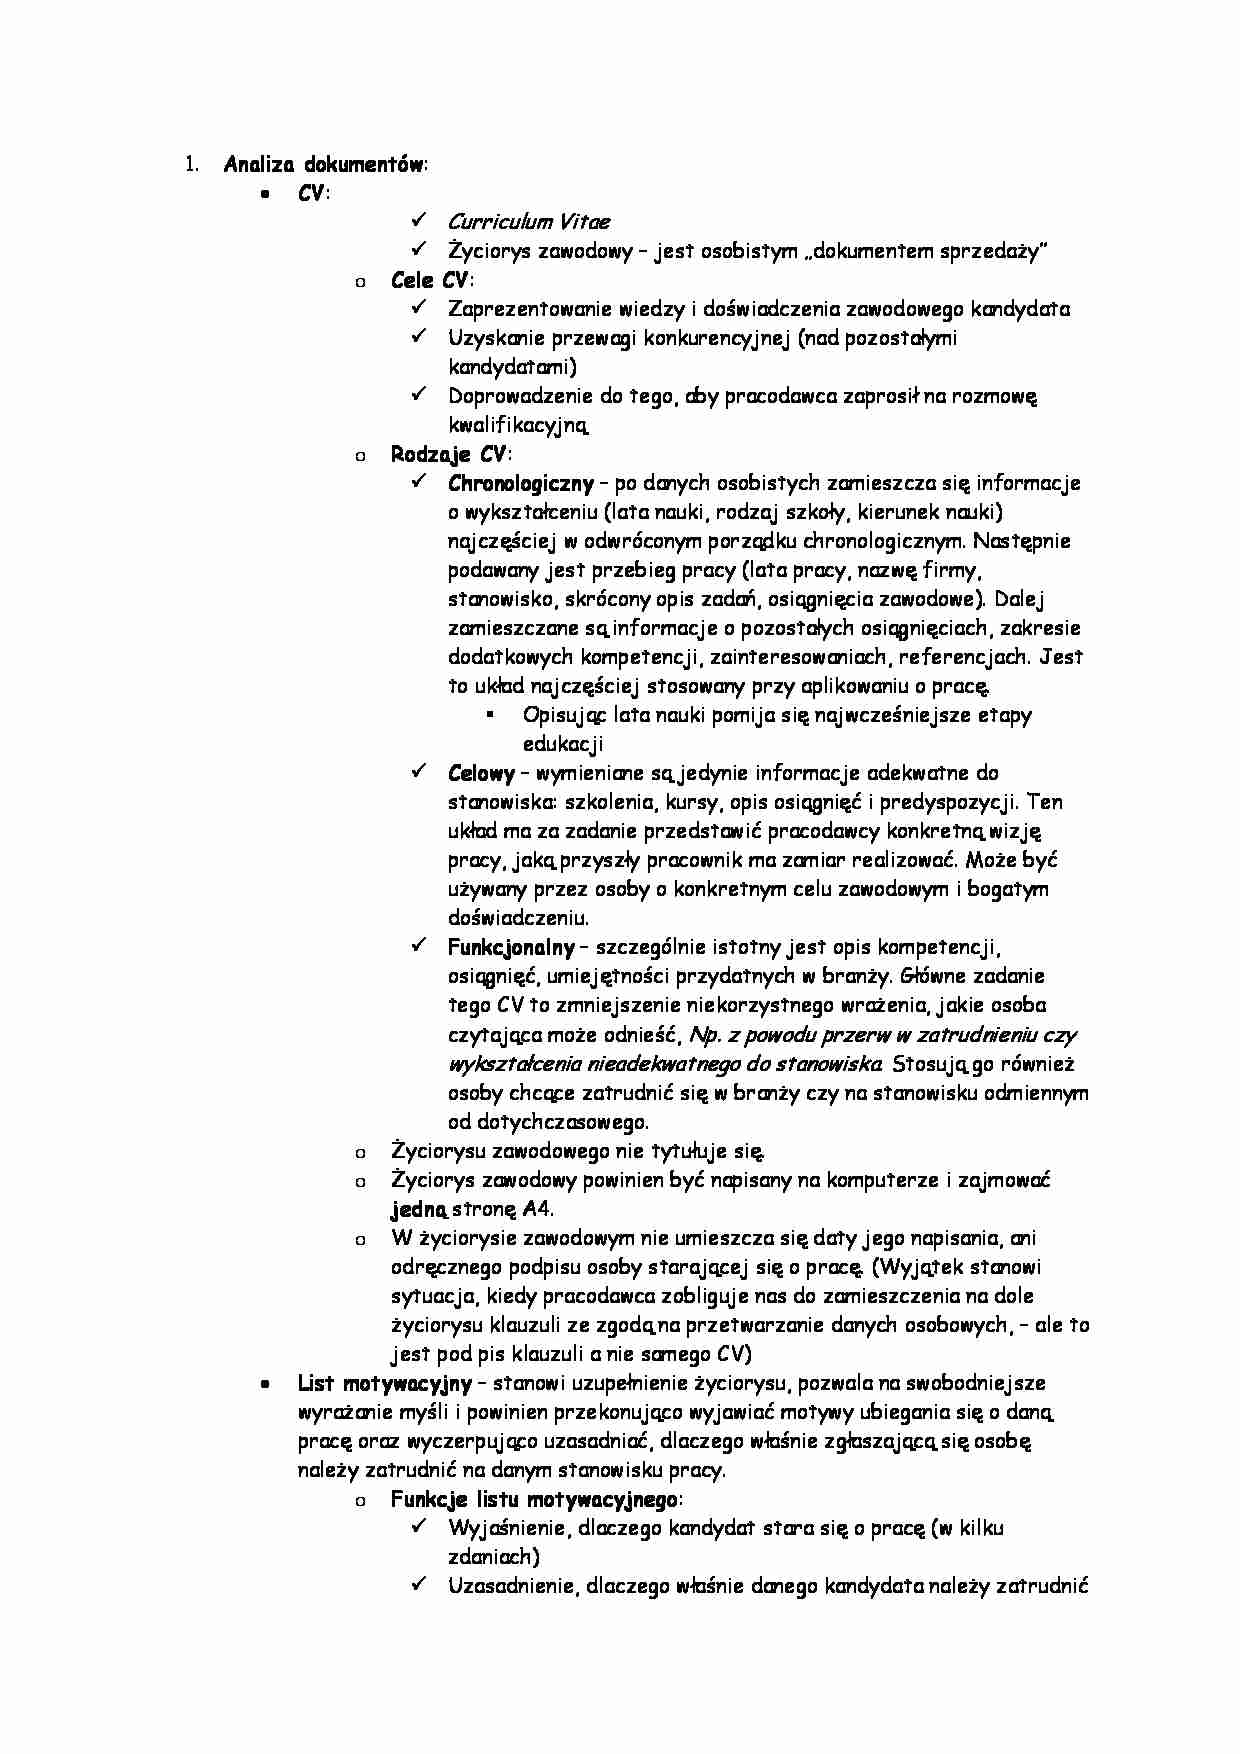 Zarządzanie zasoabmi ludzkimi - Analiza dokumentów - strona 1